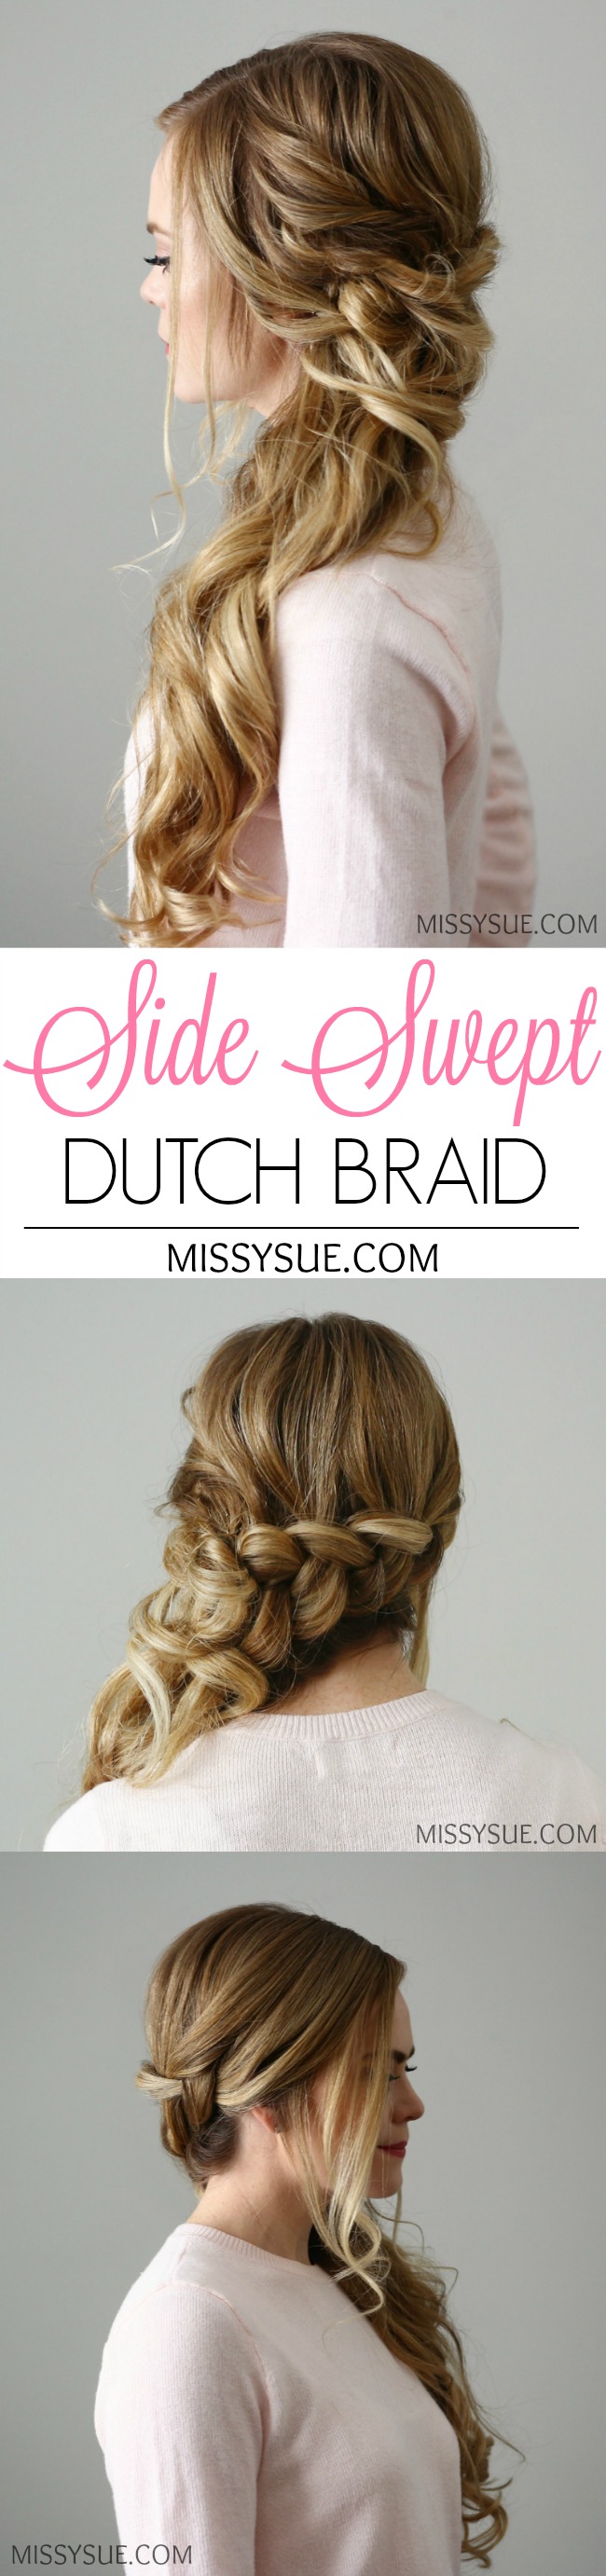 side-swept-dutch-braid-hair-tutorial-missysue